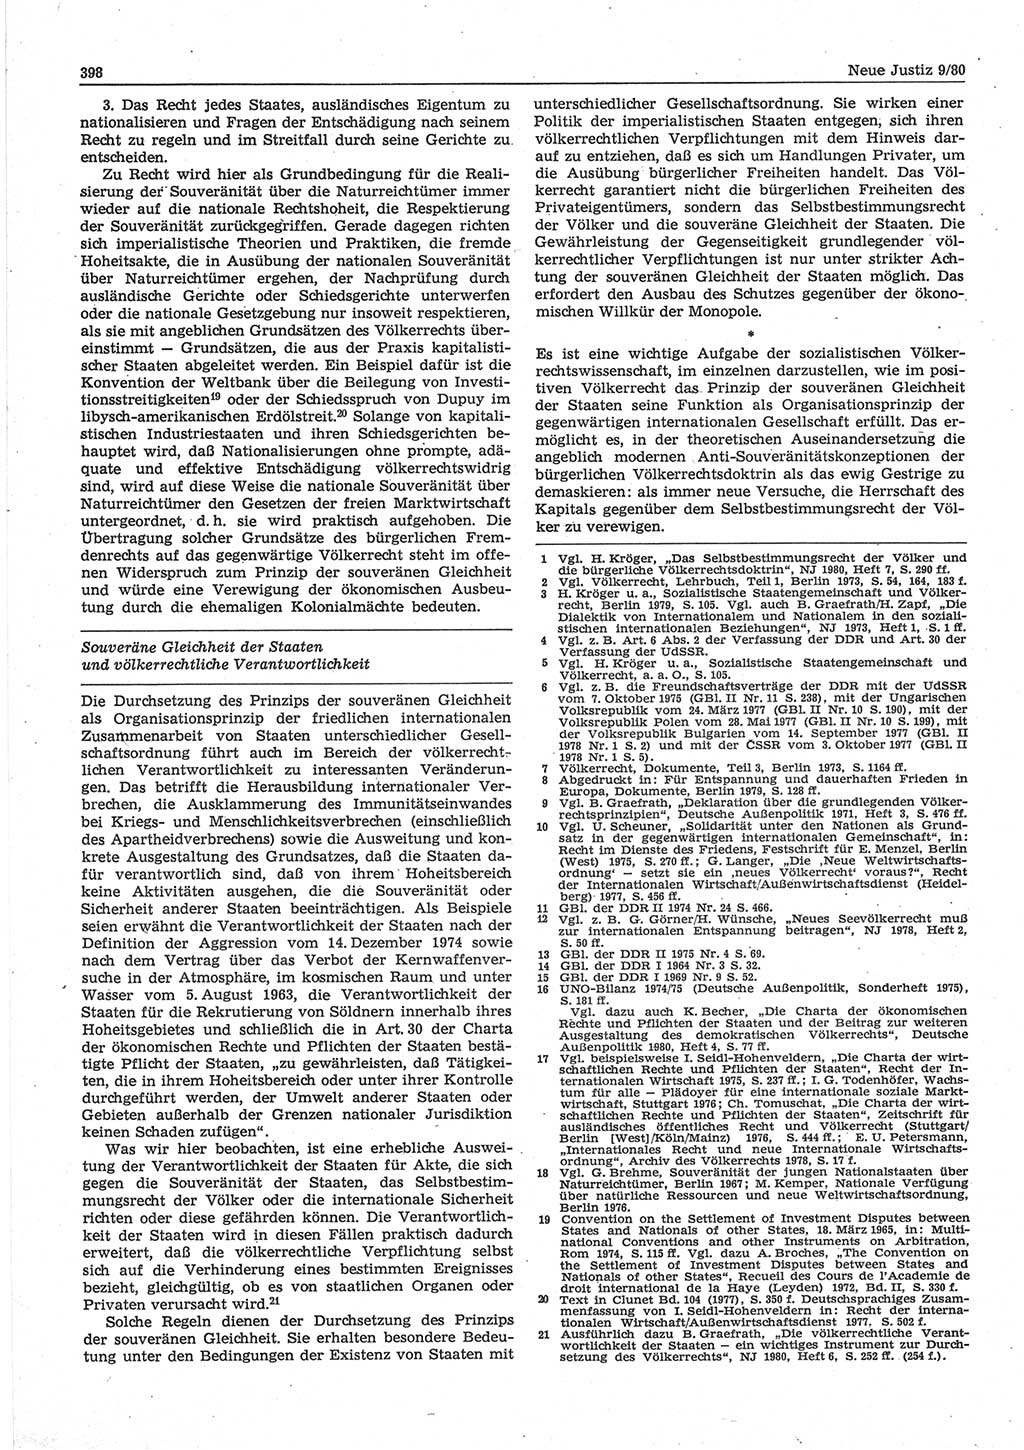 Neue Justiz (NJ), Zeitschrift für sozialistisches Recht und Gesetzlichkeit [Deutsche Demokratische Republik (DDR)], 34. Jahrgang 1980, Seite 398 (NJ DDR 1980, S. 398)